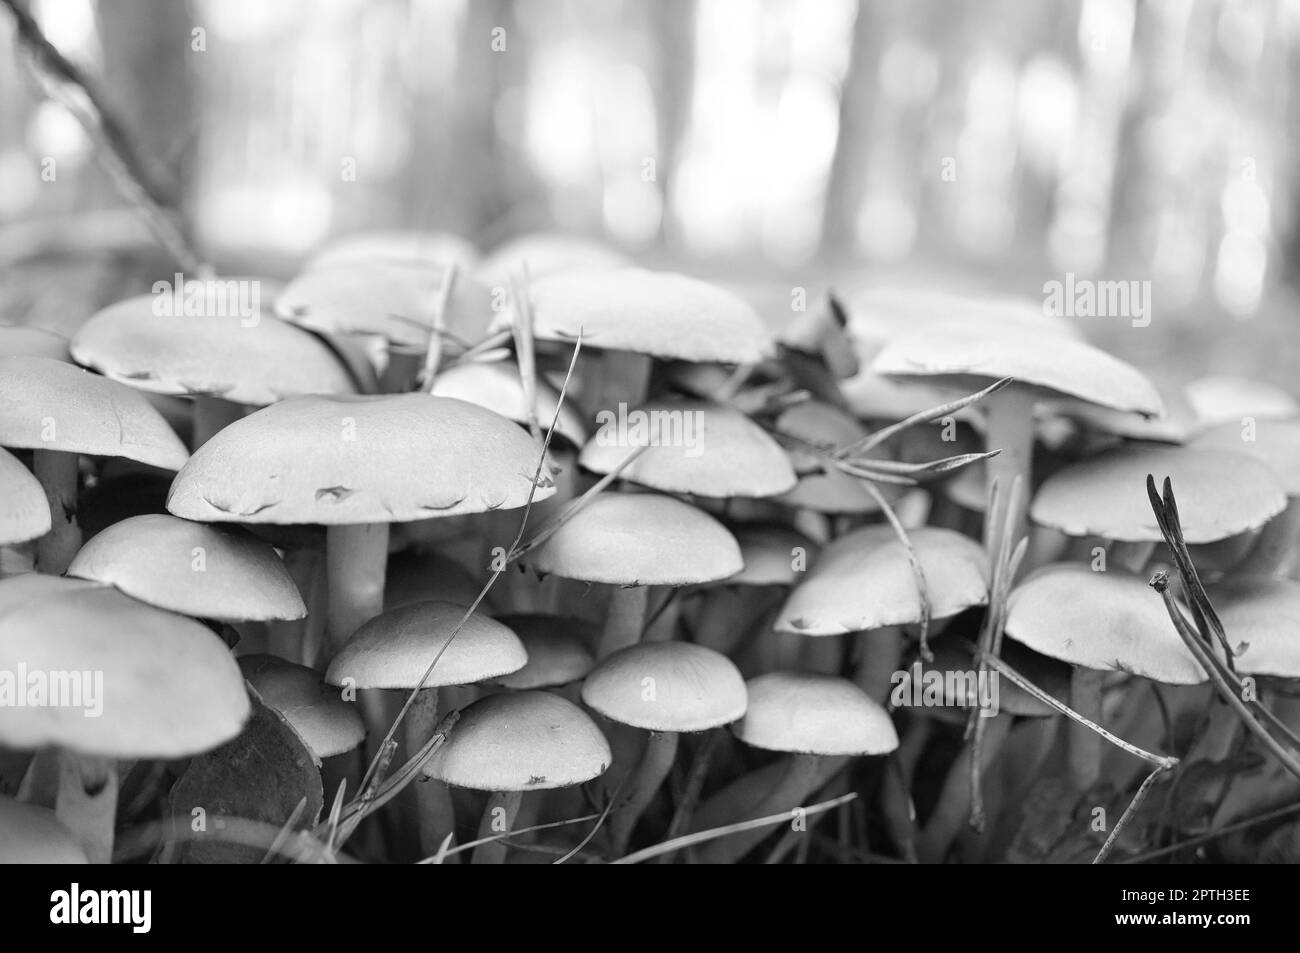 Un groupe de petits champignons en filigrane, pris en noir et blanc, sur le sol de la forêt en lumière douce. Photo macro de la nature Banque D'Images